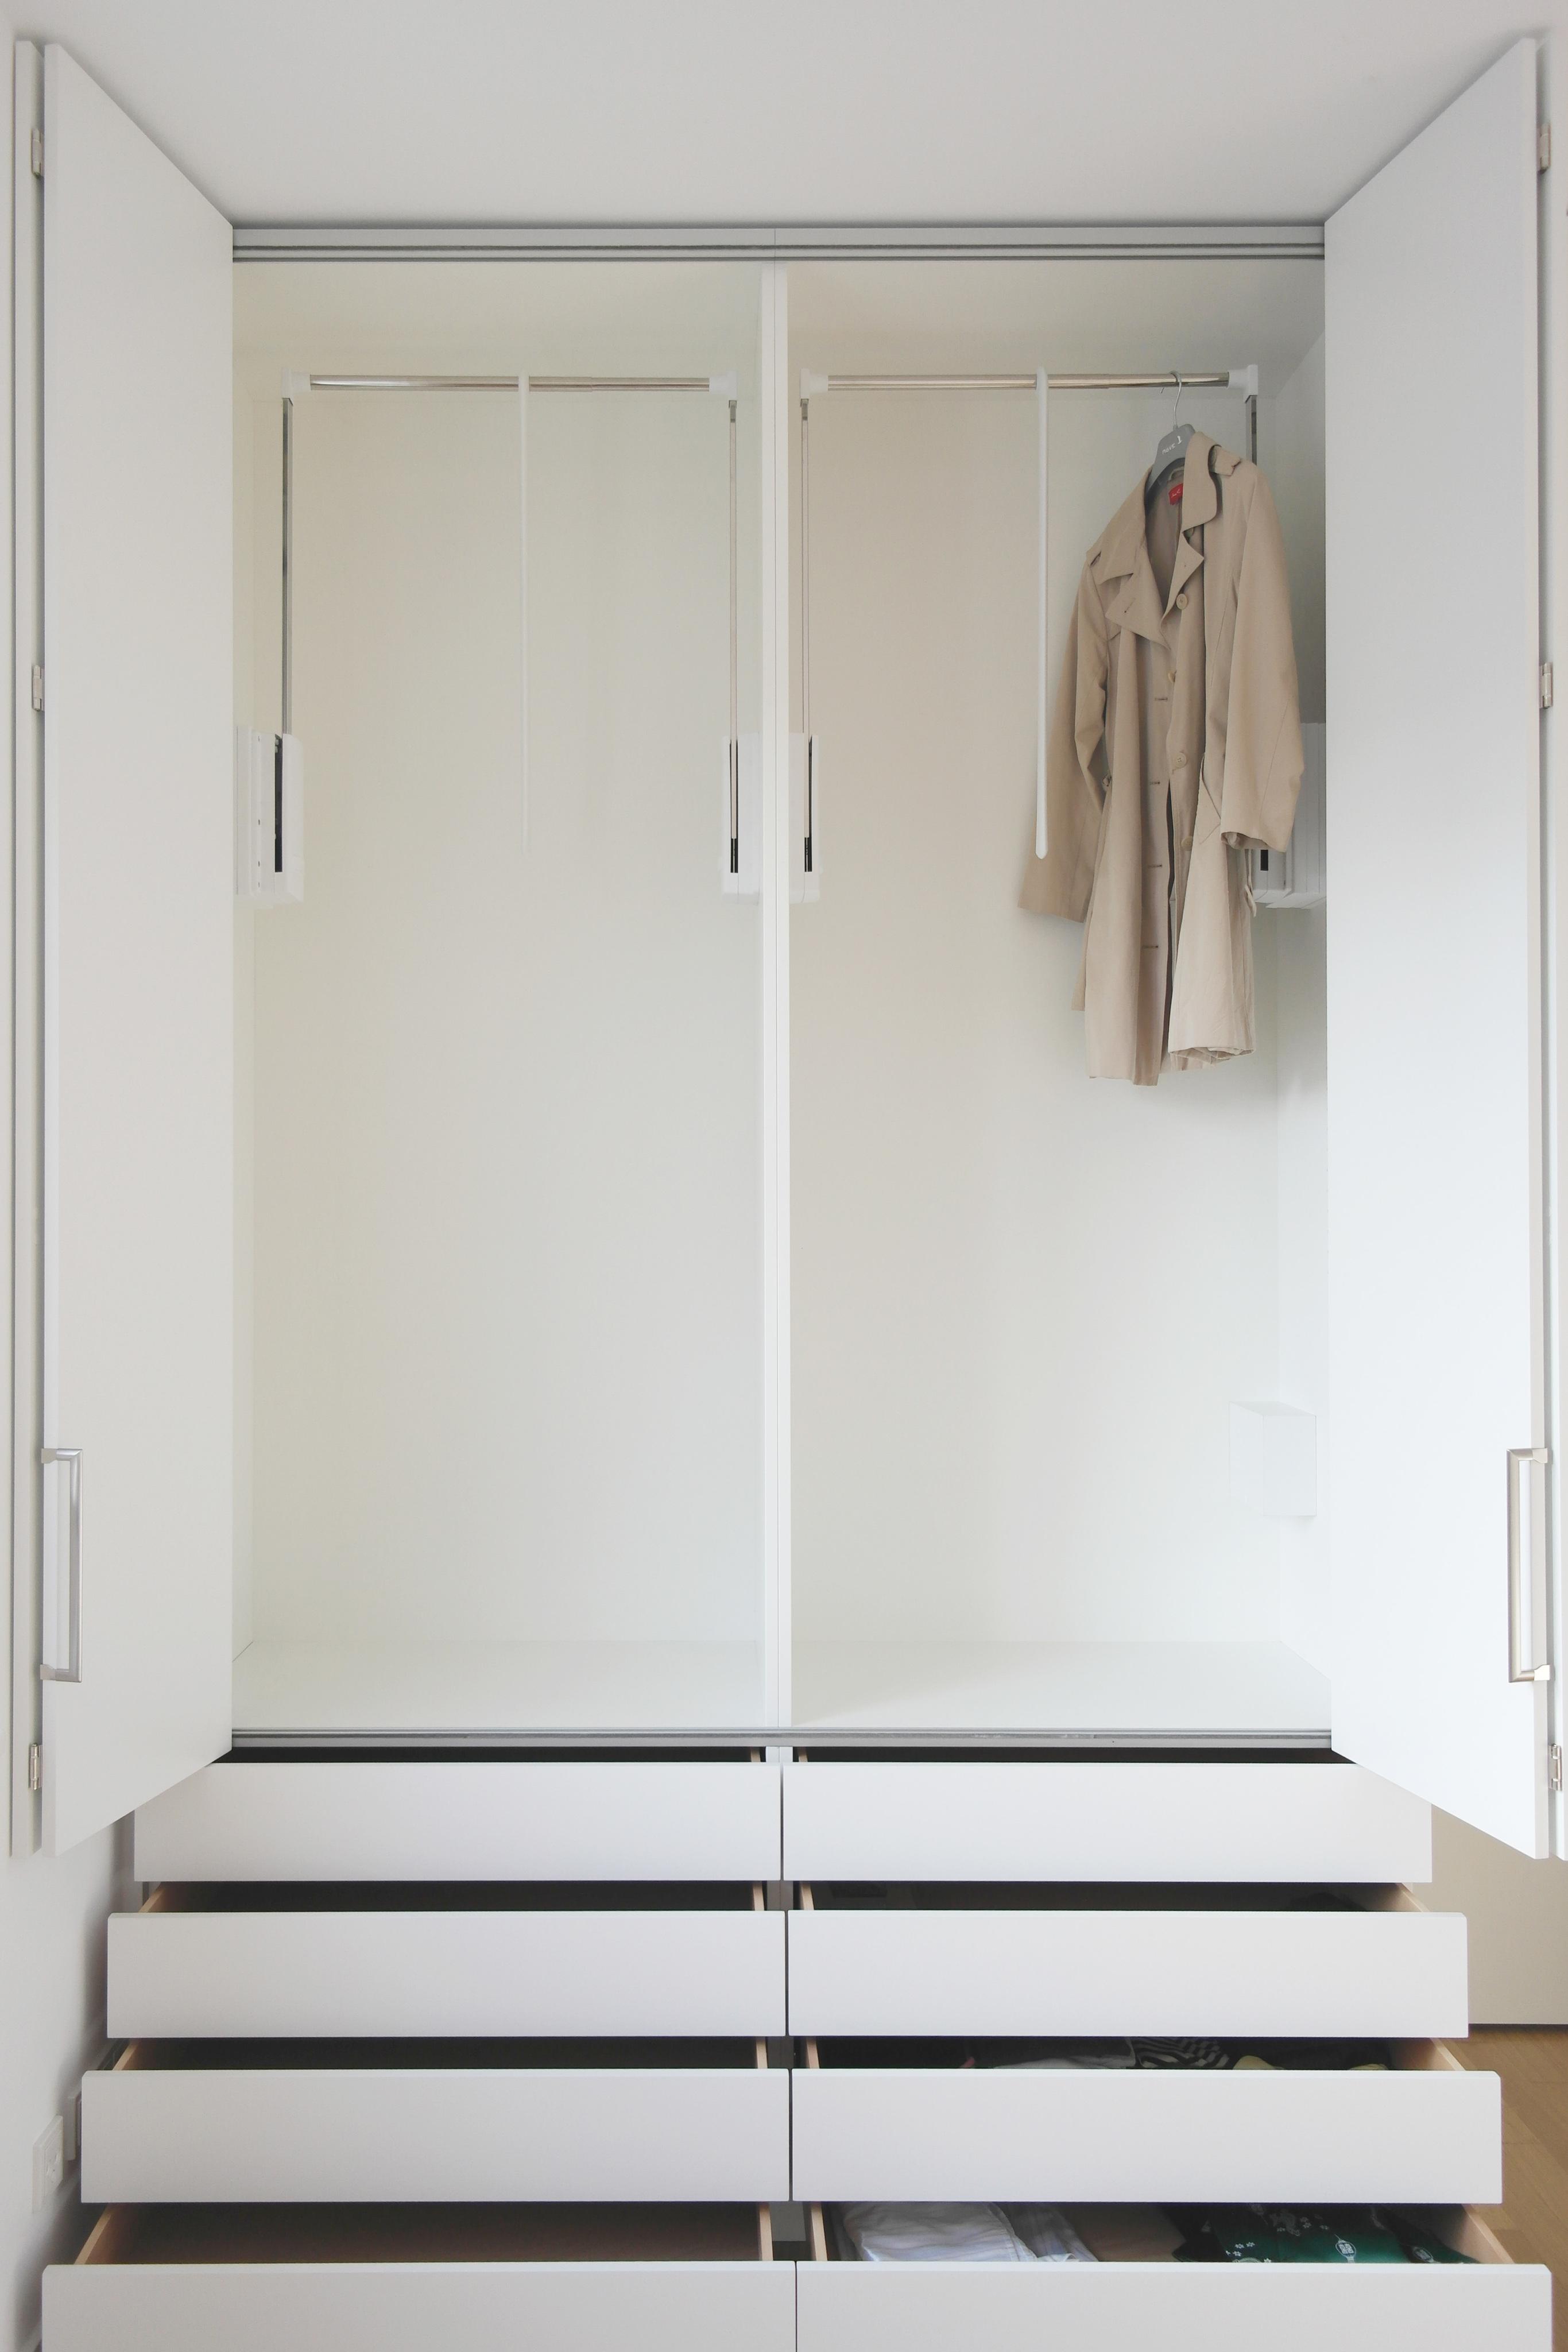 GANTZ Kleiderschrank mit Faltschiebetüren und Schubladen #faltschiebetür #kleiderschrank ©Gantz